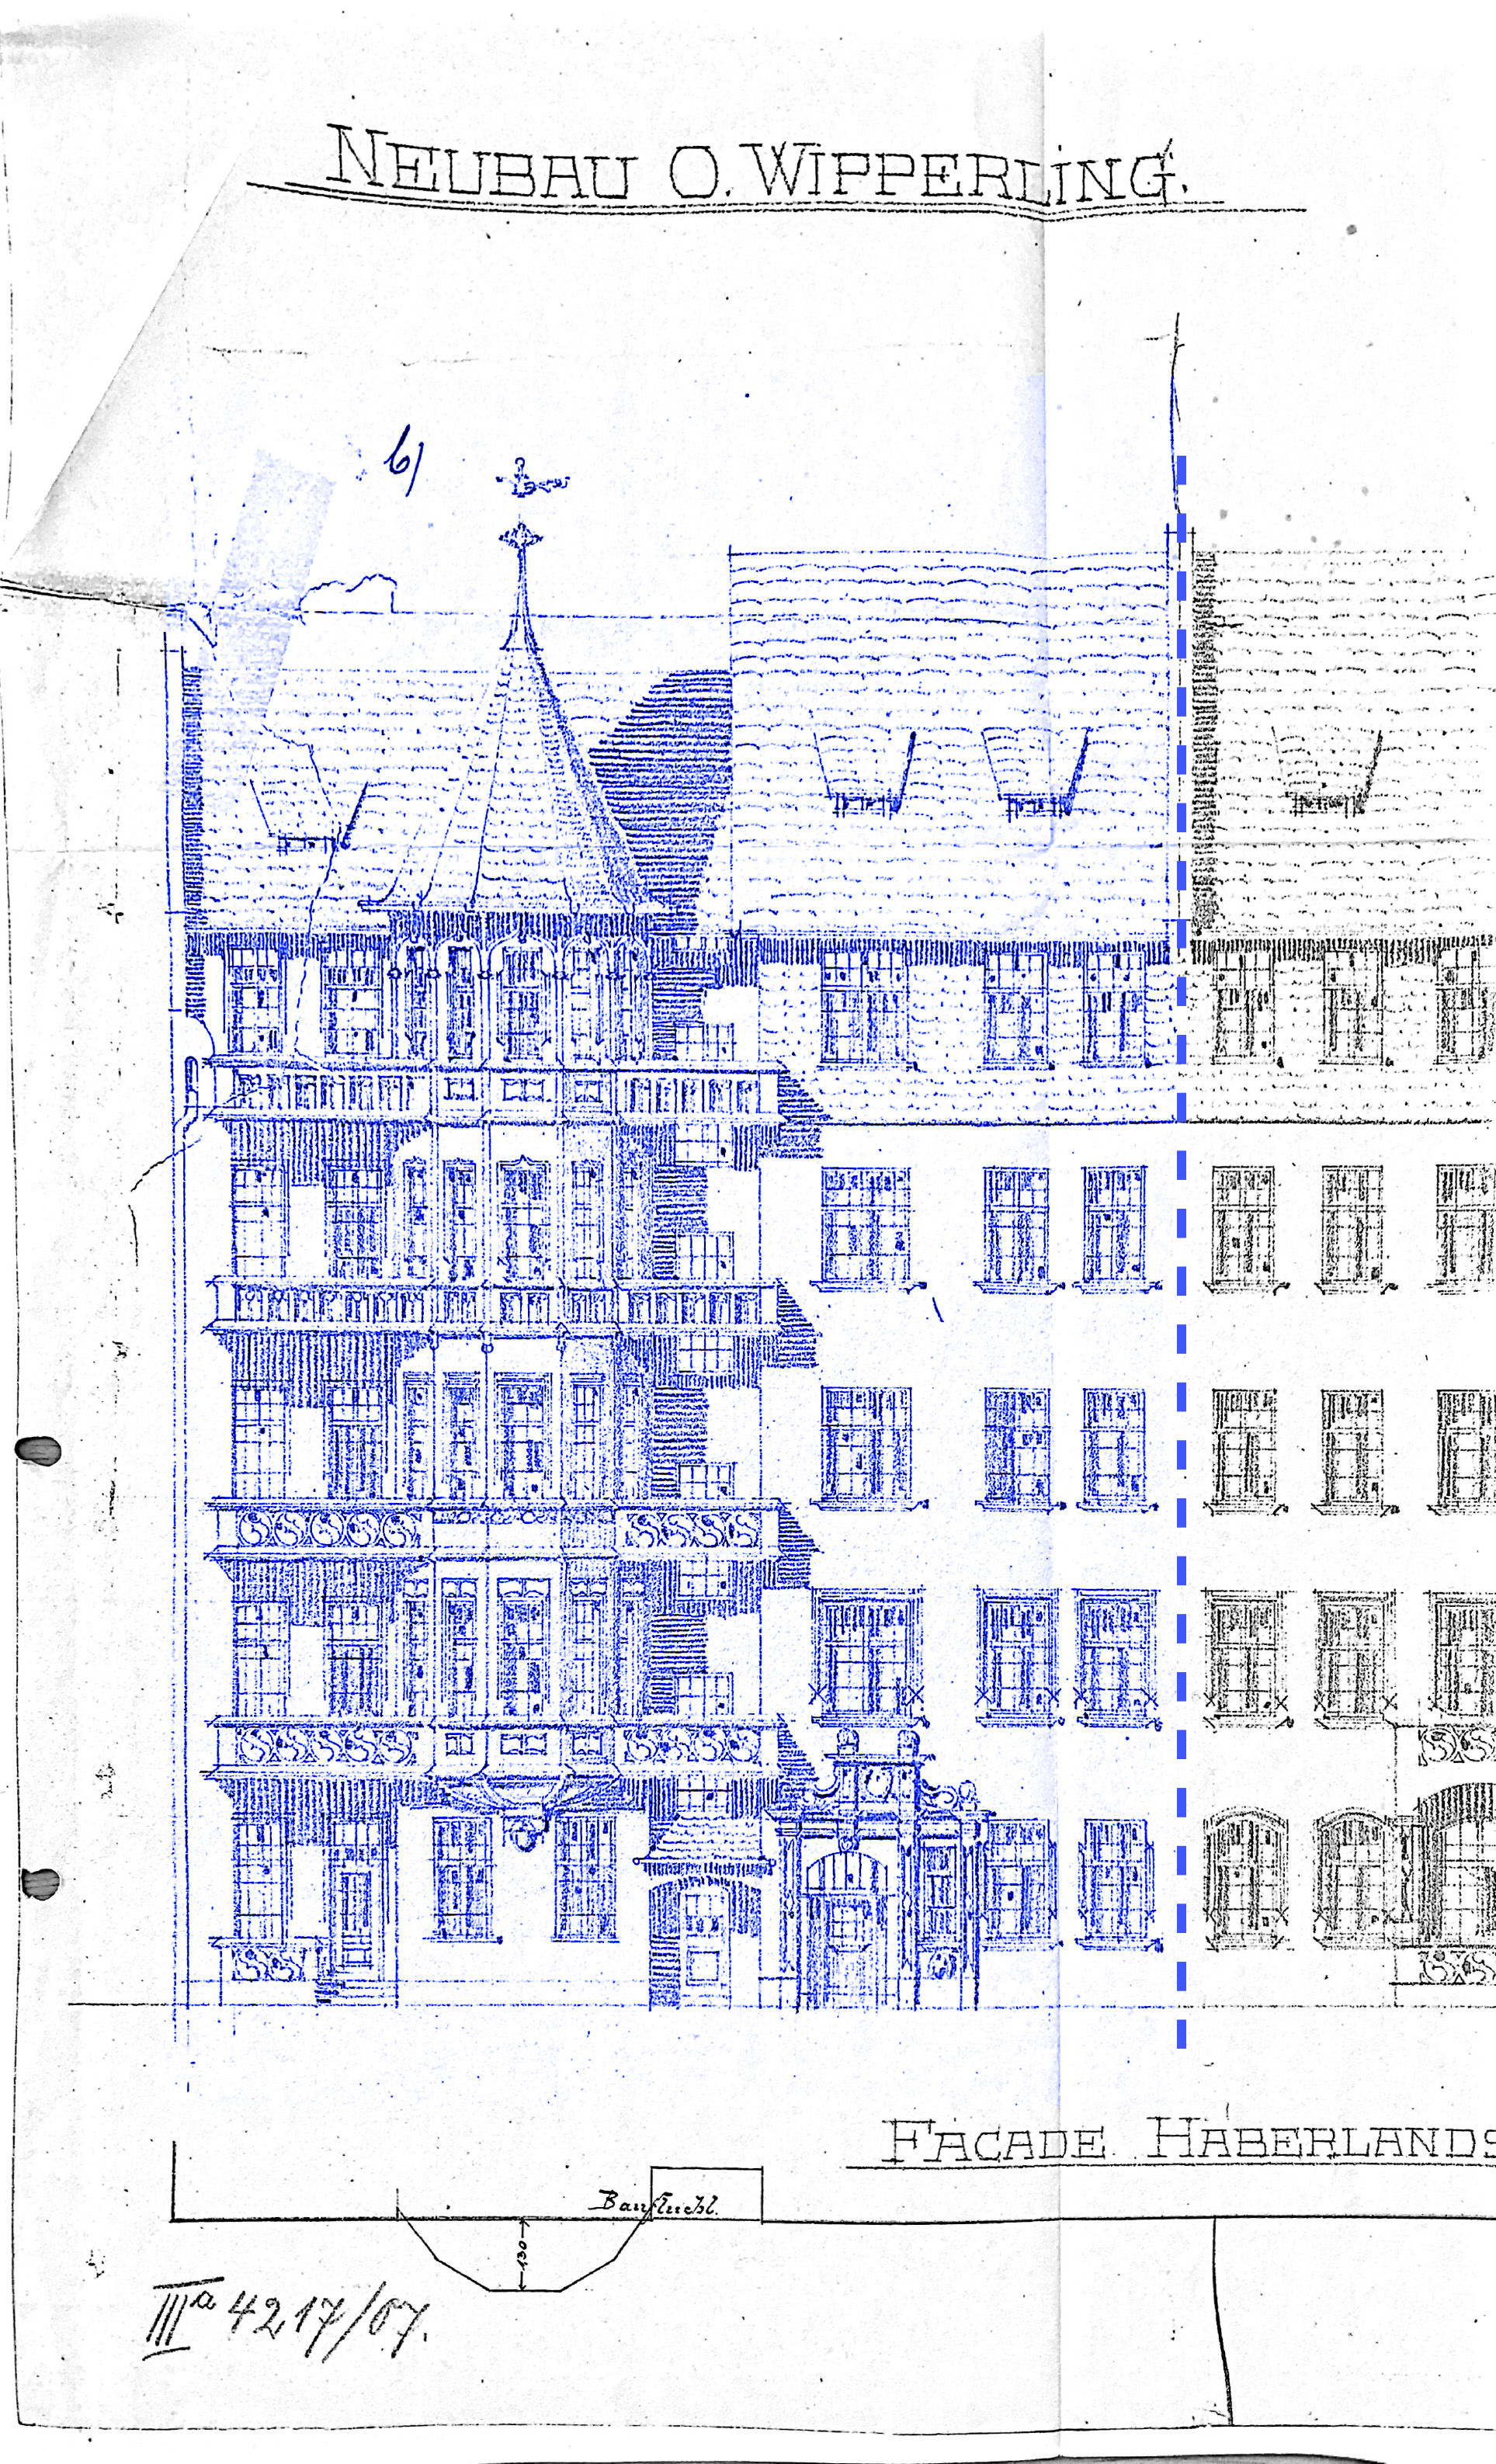 Historische Zeichnung Fassade Haberlandstr. 1